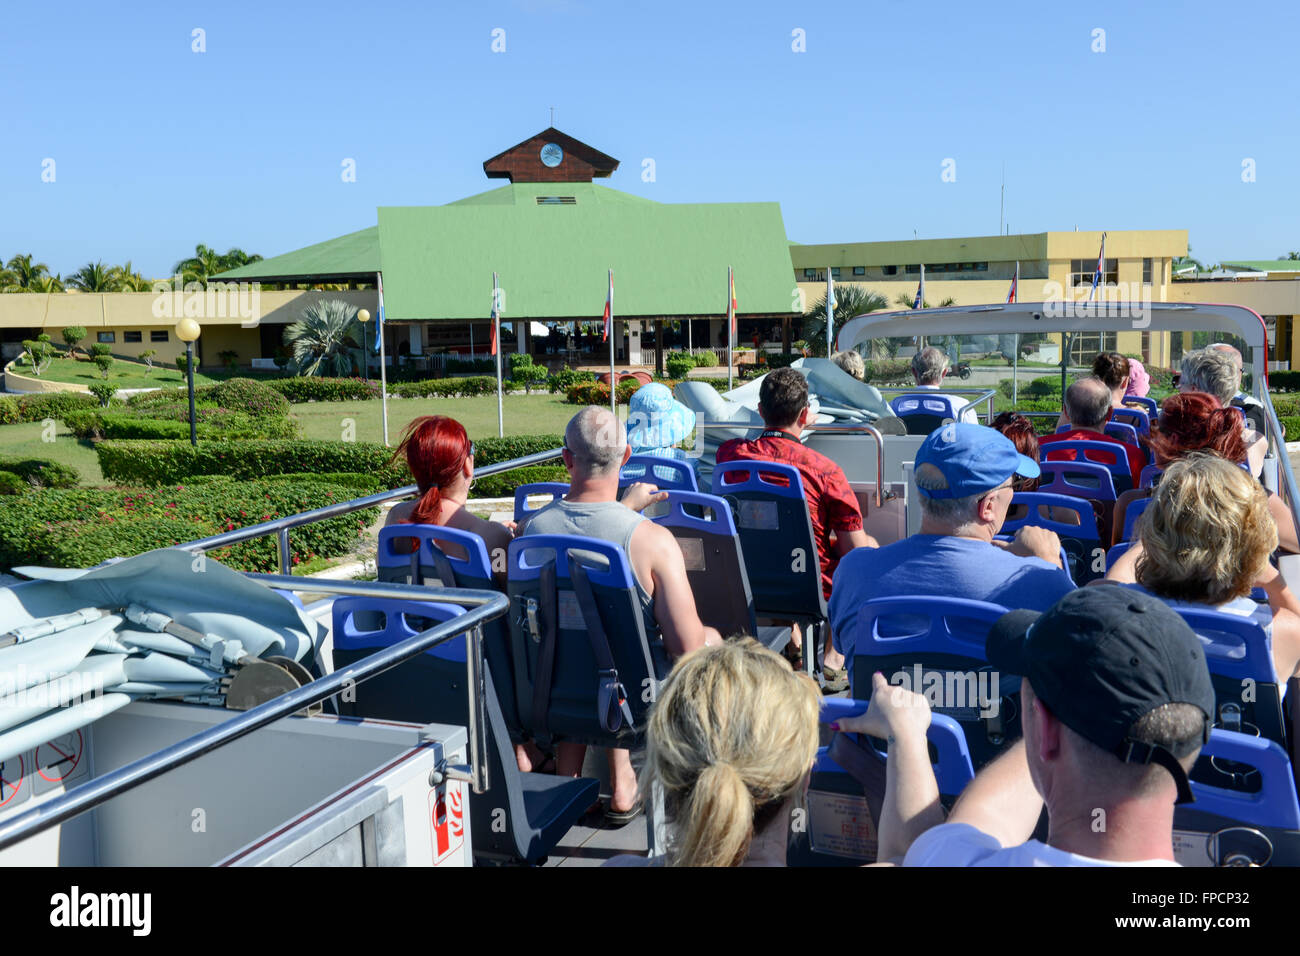 Cayo Coco, Cuba, 16 janvier 2016 - les gens sur un bus touristique dans le parc de l'hôtel Tryp Coco sur Cayo Coco, Cuba Banque D'Images